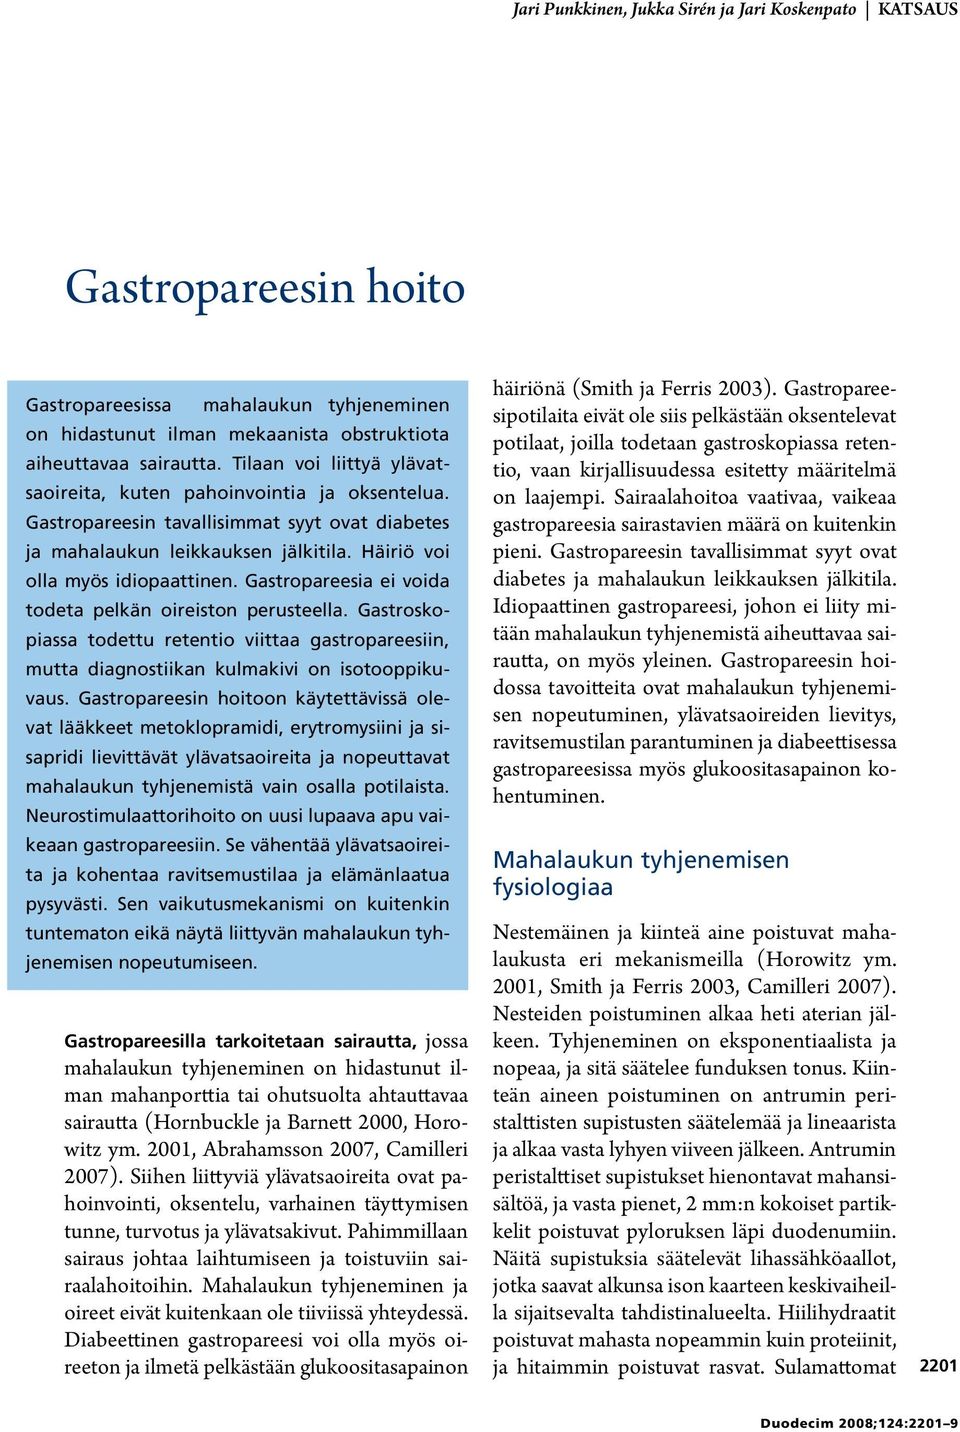 Gastropareesia ei voida todeta pelkän oireiston perusteella. Gastroskopiassa todettu retentio viittaa gastropareesiin, mutta diagnostiikan kulmakivi on isotooppikuvaus.